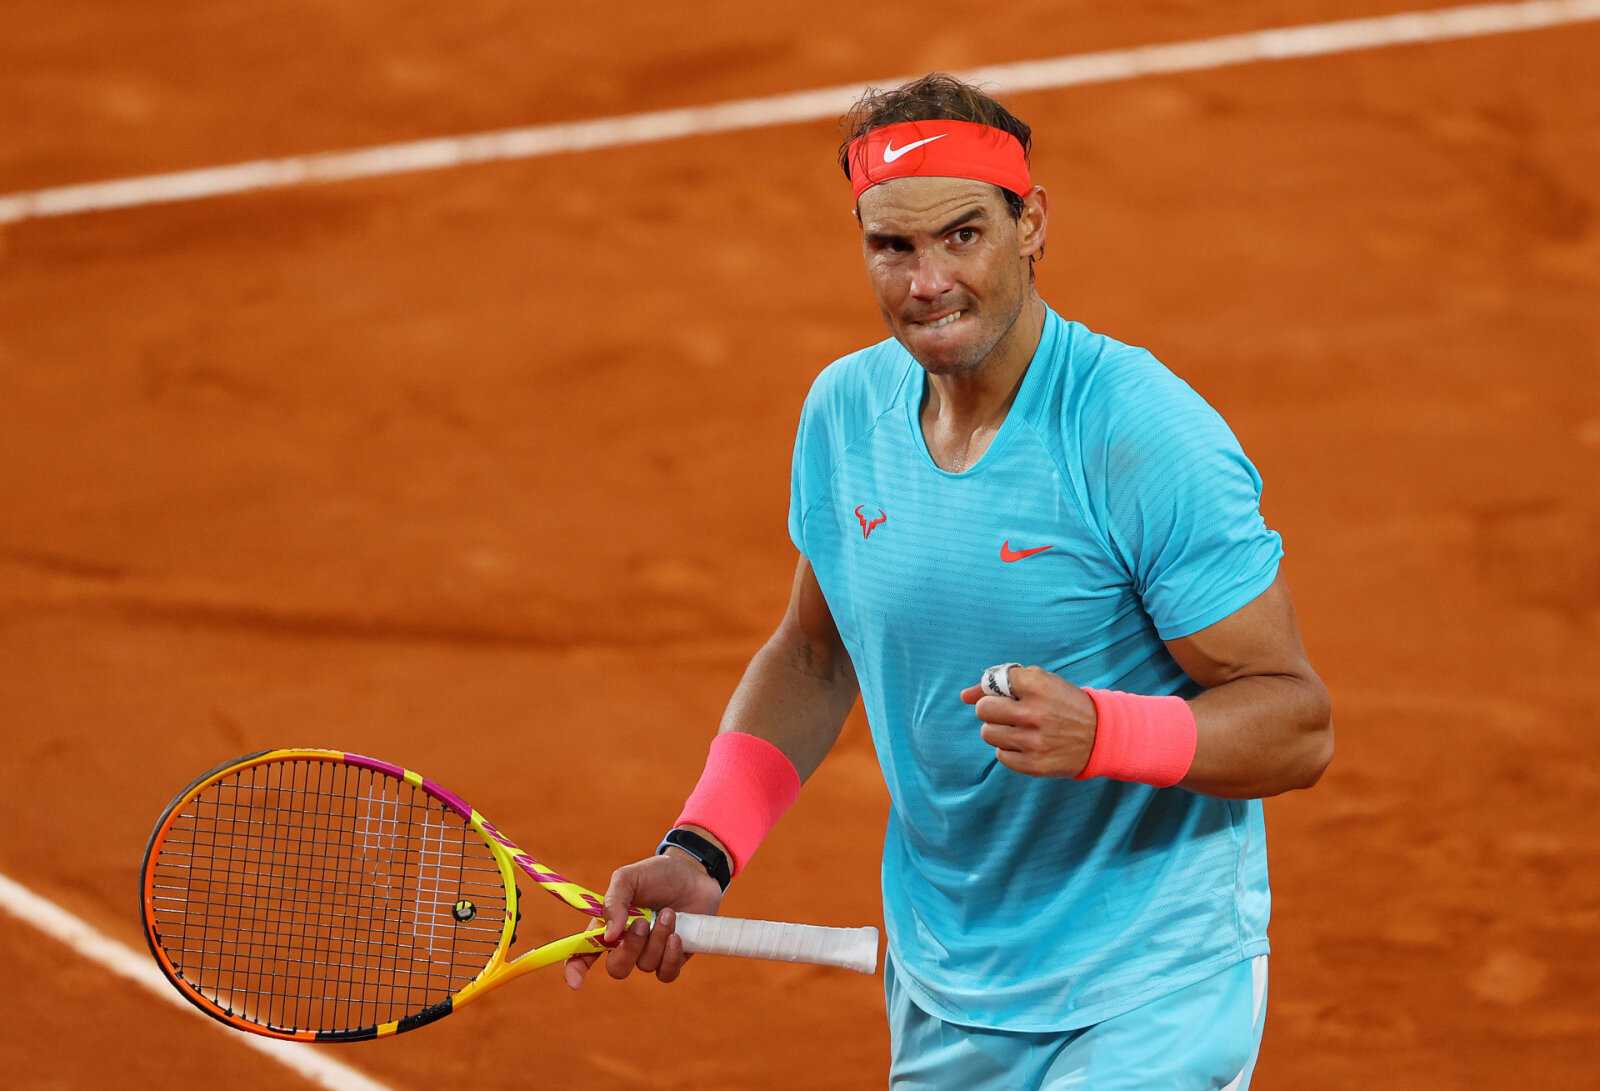 Quels records Rafael Nadal poursuit dans cette saison sur terre battue?